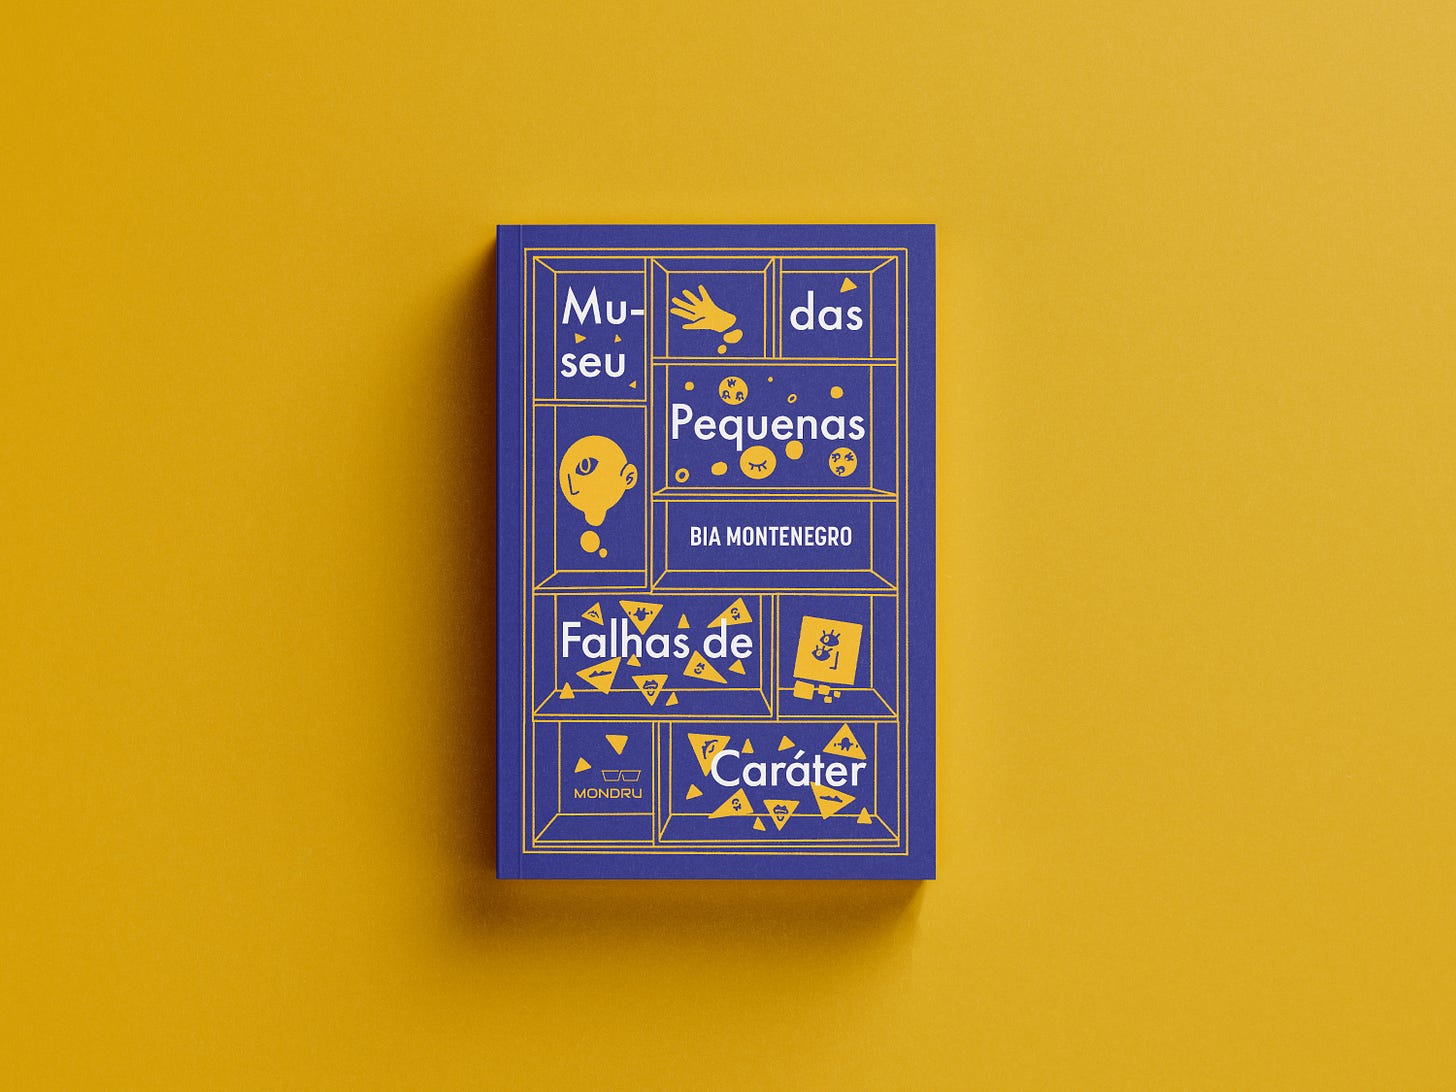 Livro "Museu das Pequenas Falhas de Caráter", por Bia Montenegro, pela editora Mondru. A capa é azul meio roxa, com uma ilustração de prateleiras similar a do conto ilustrado acima.